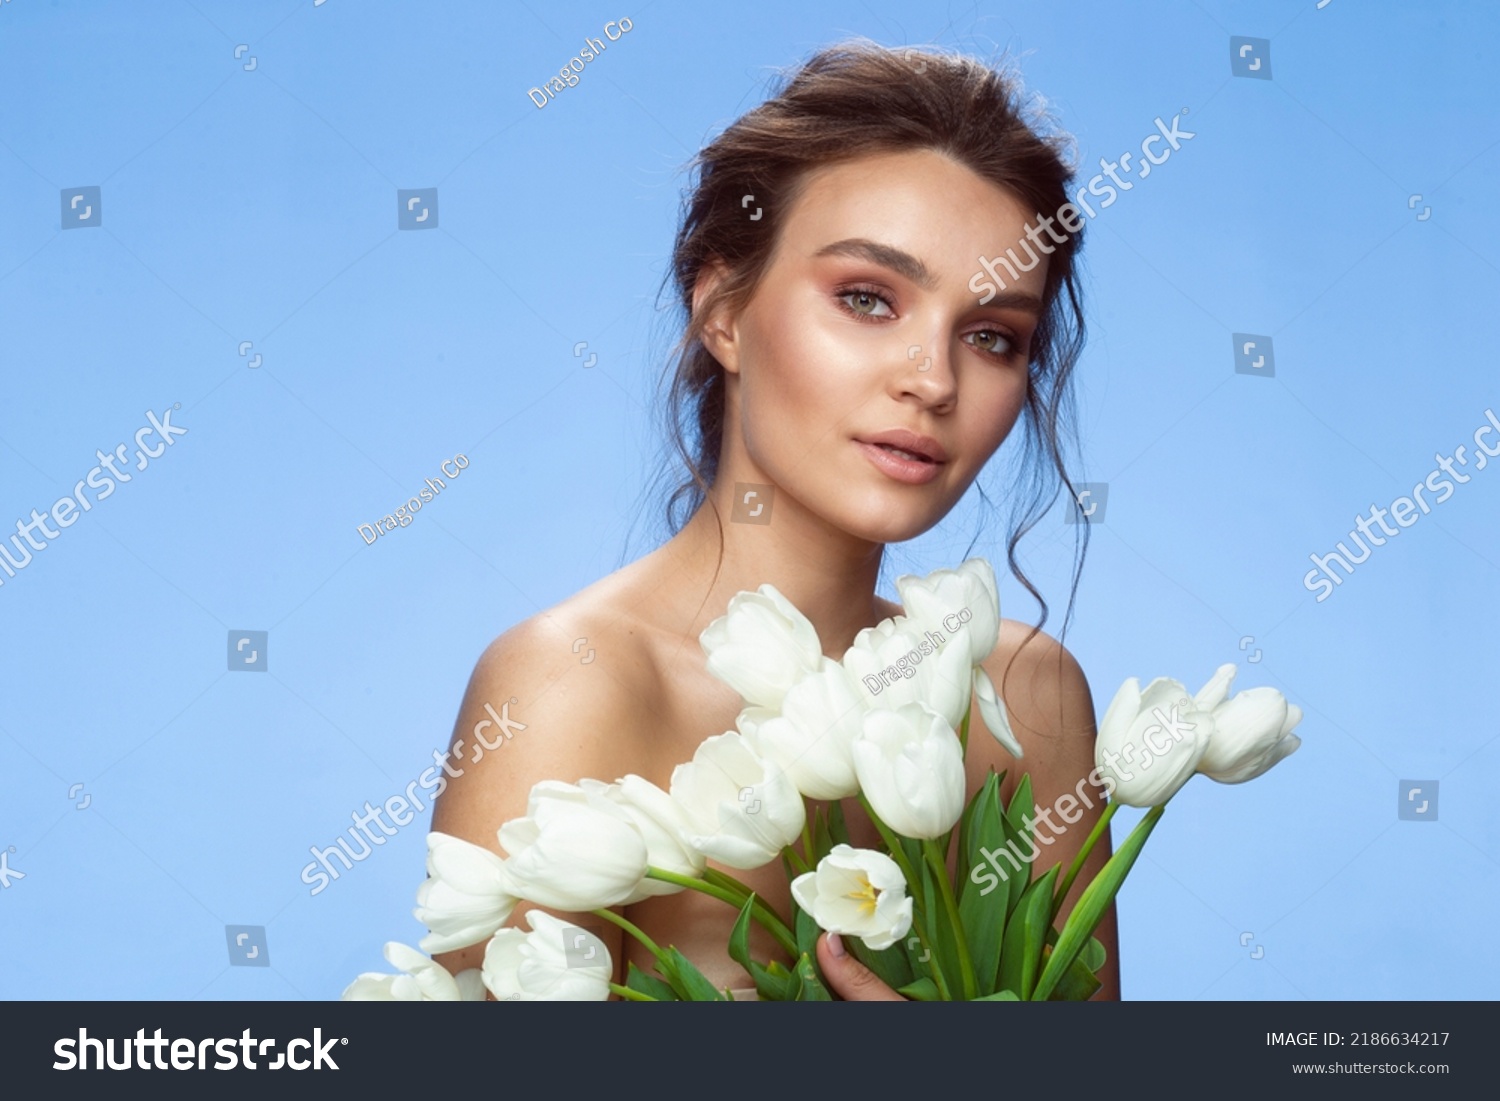 631 imágenes de Girl naked tulip Imágenes fotos y vectores de stock